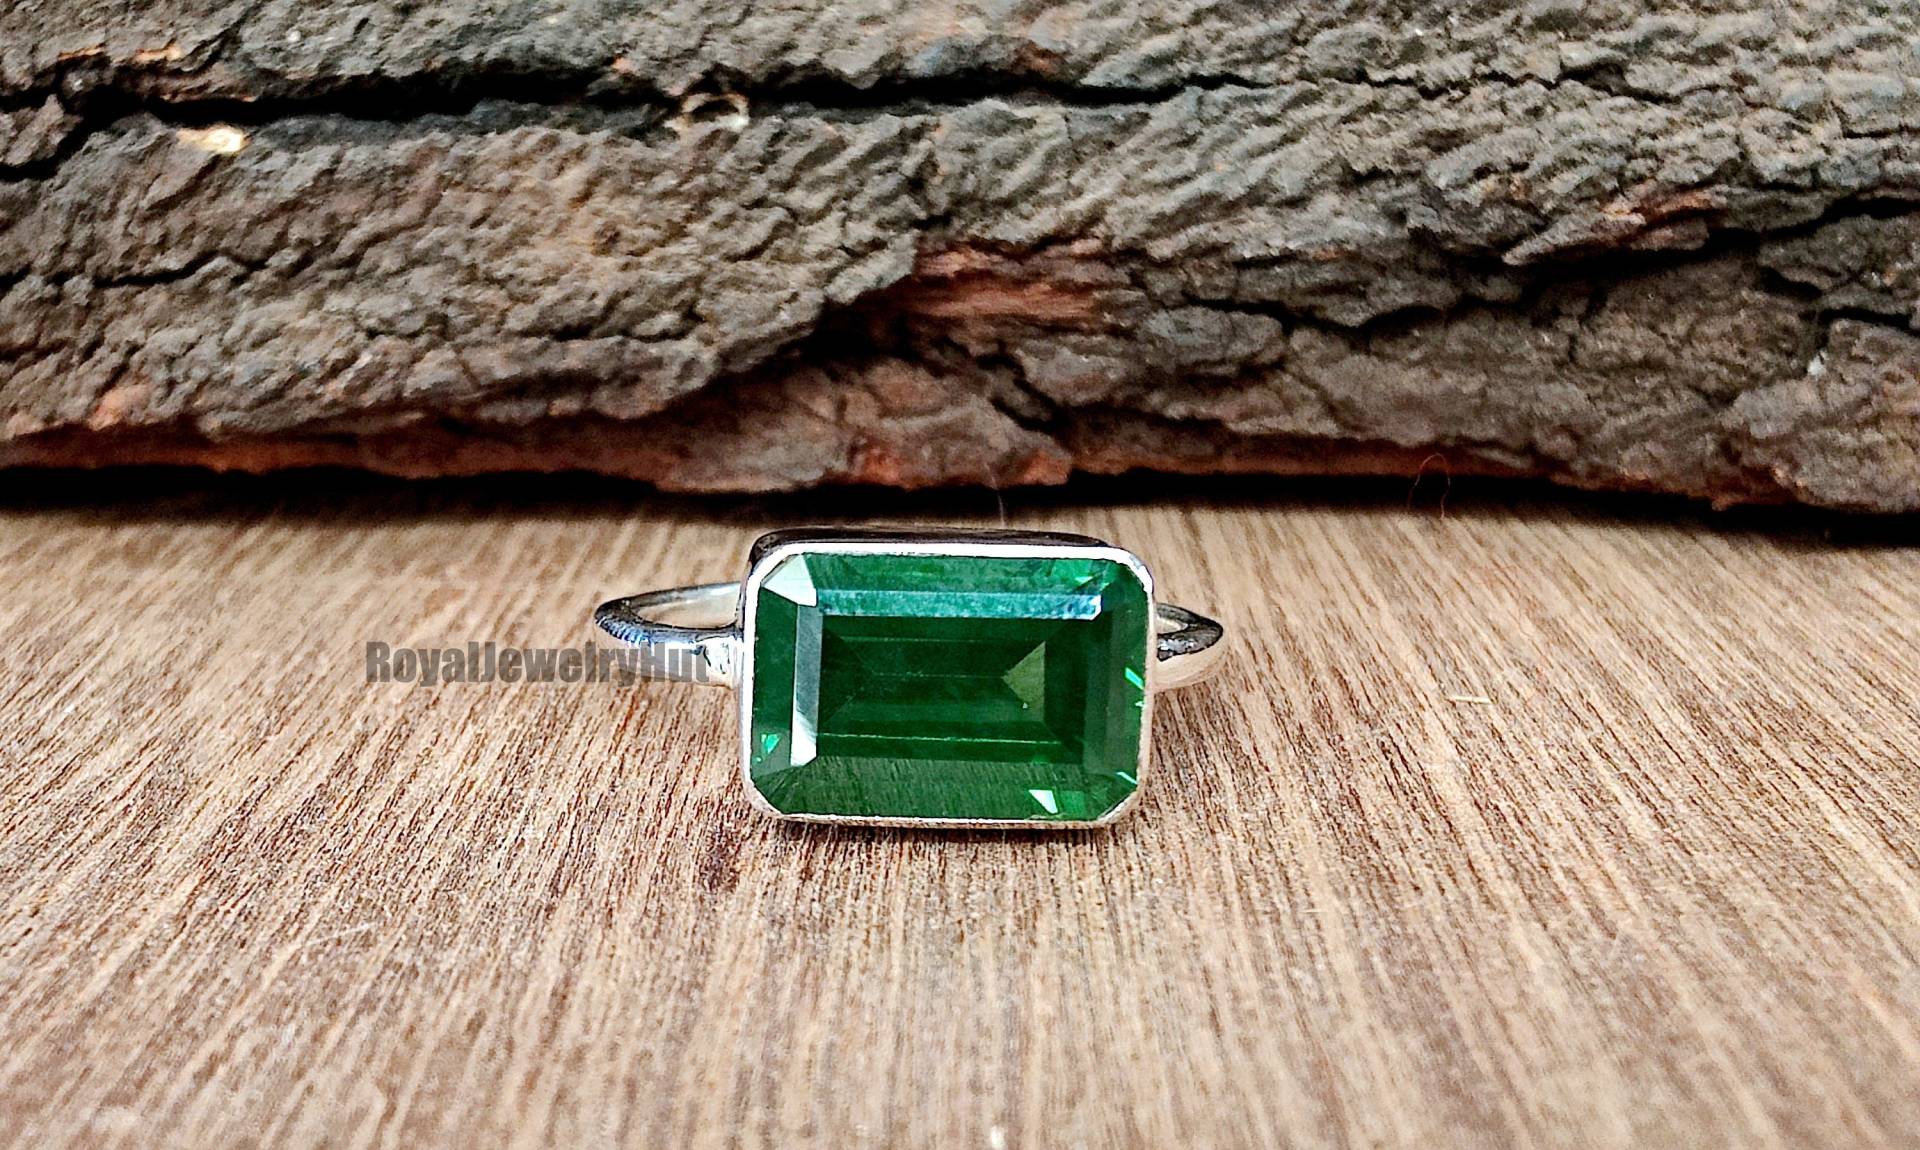 Smaragd Ring, 925 Sterling Silber Schöner Quarz Edelstein Handgemachter Statement Geschenk Ring von RoyalJewelryHut